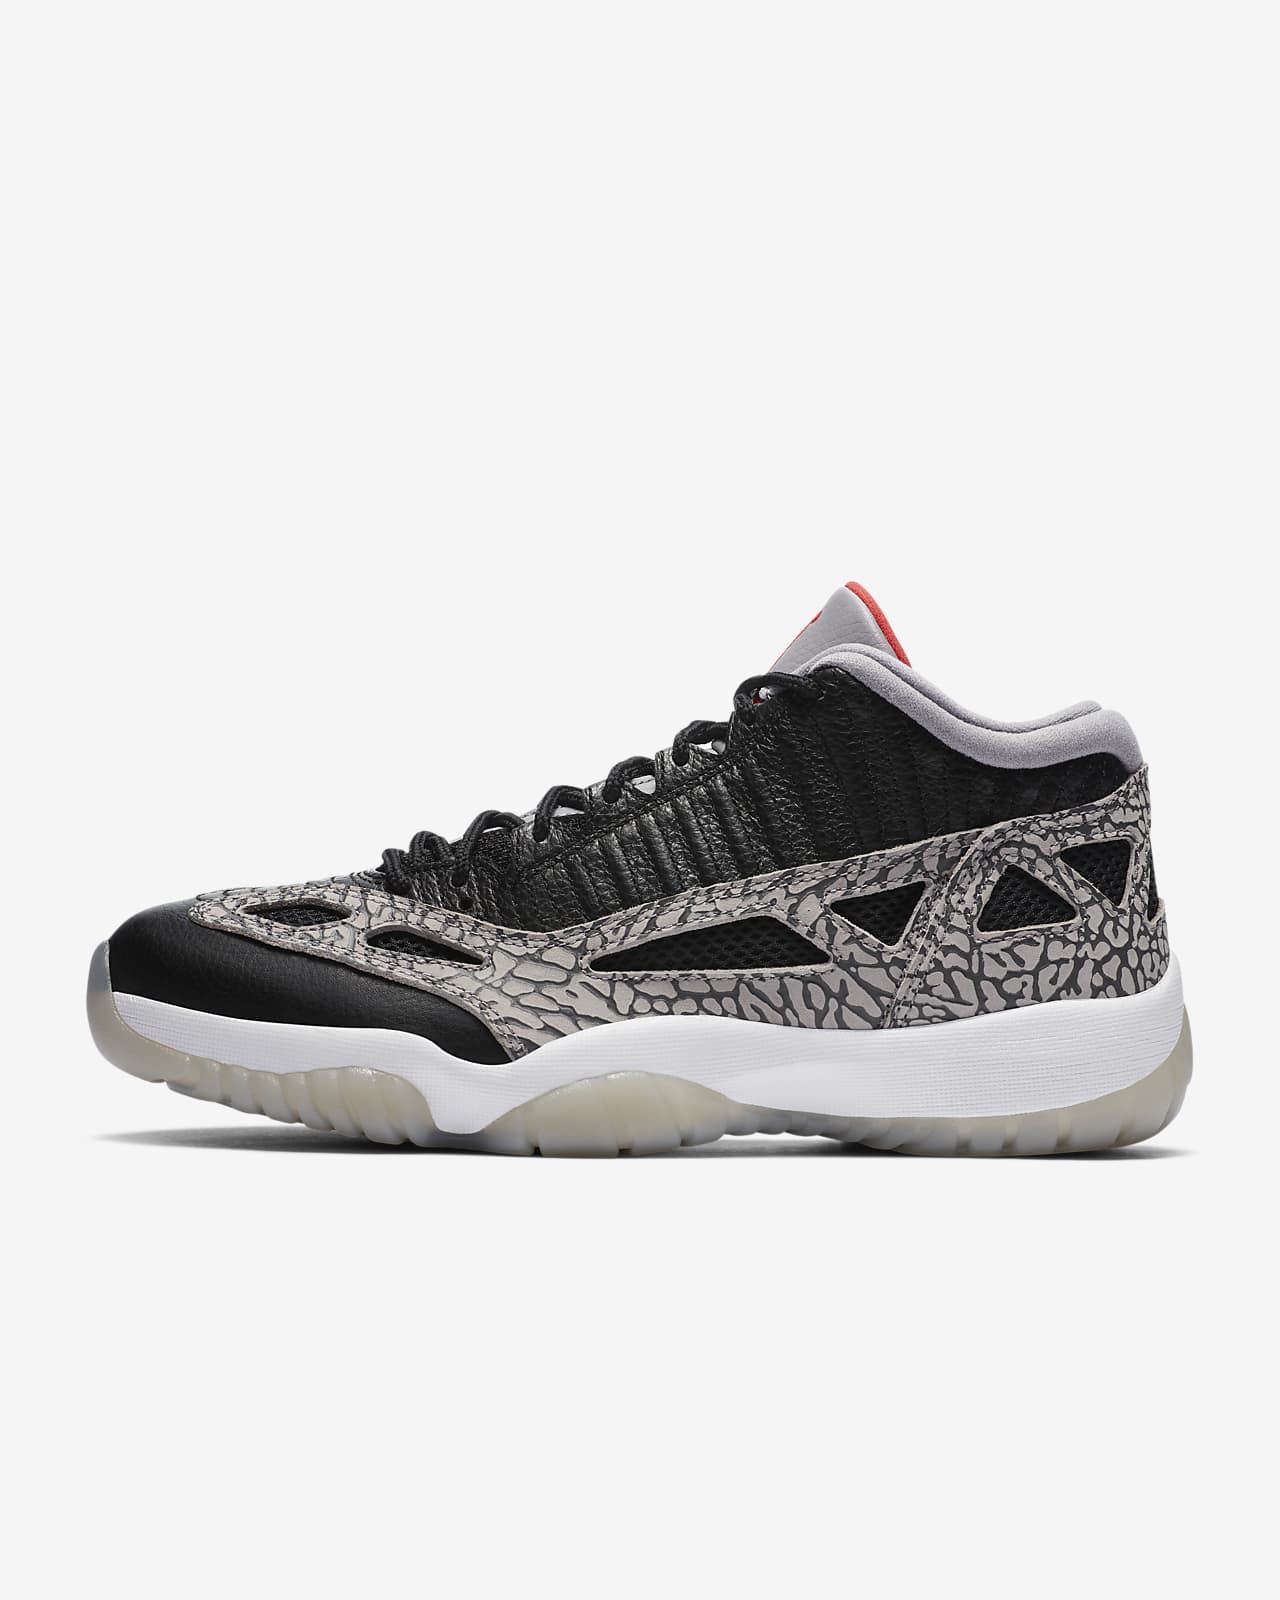 Air Jordan 11 Retro Low IE Shoe. Nike DK